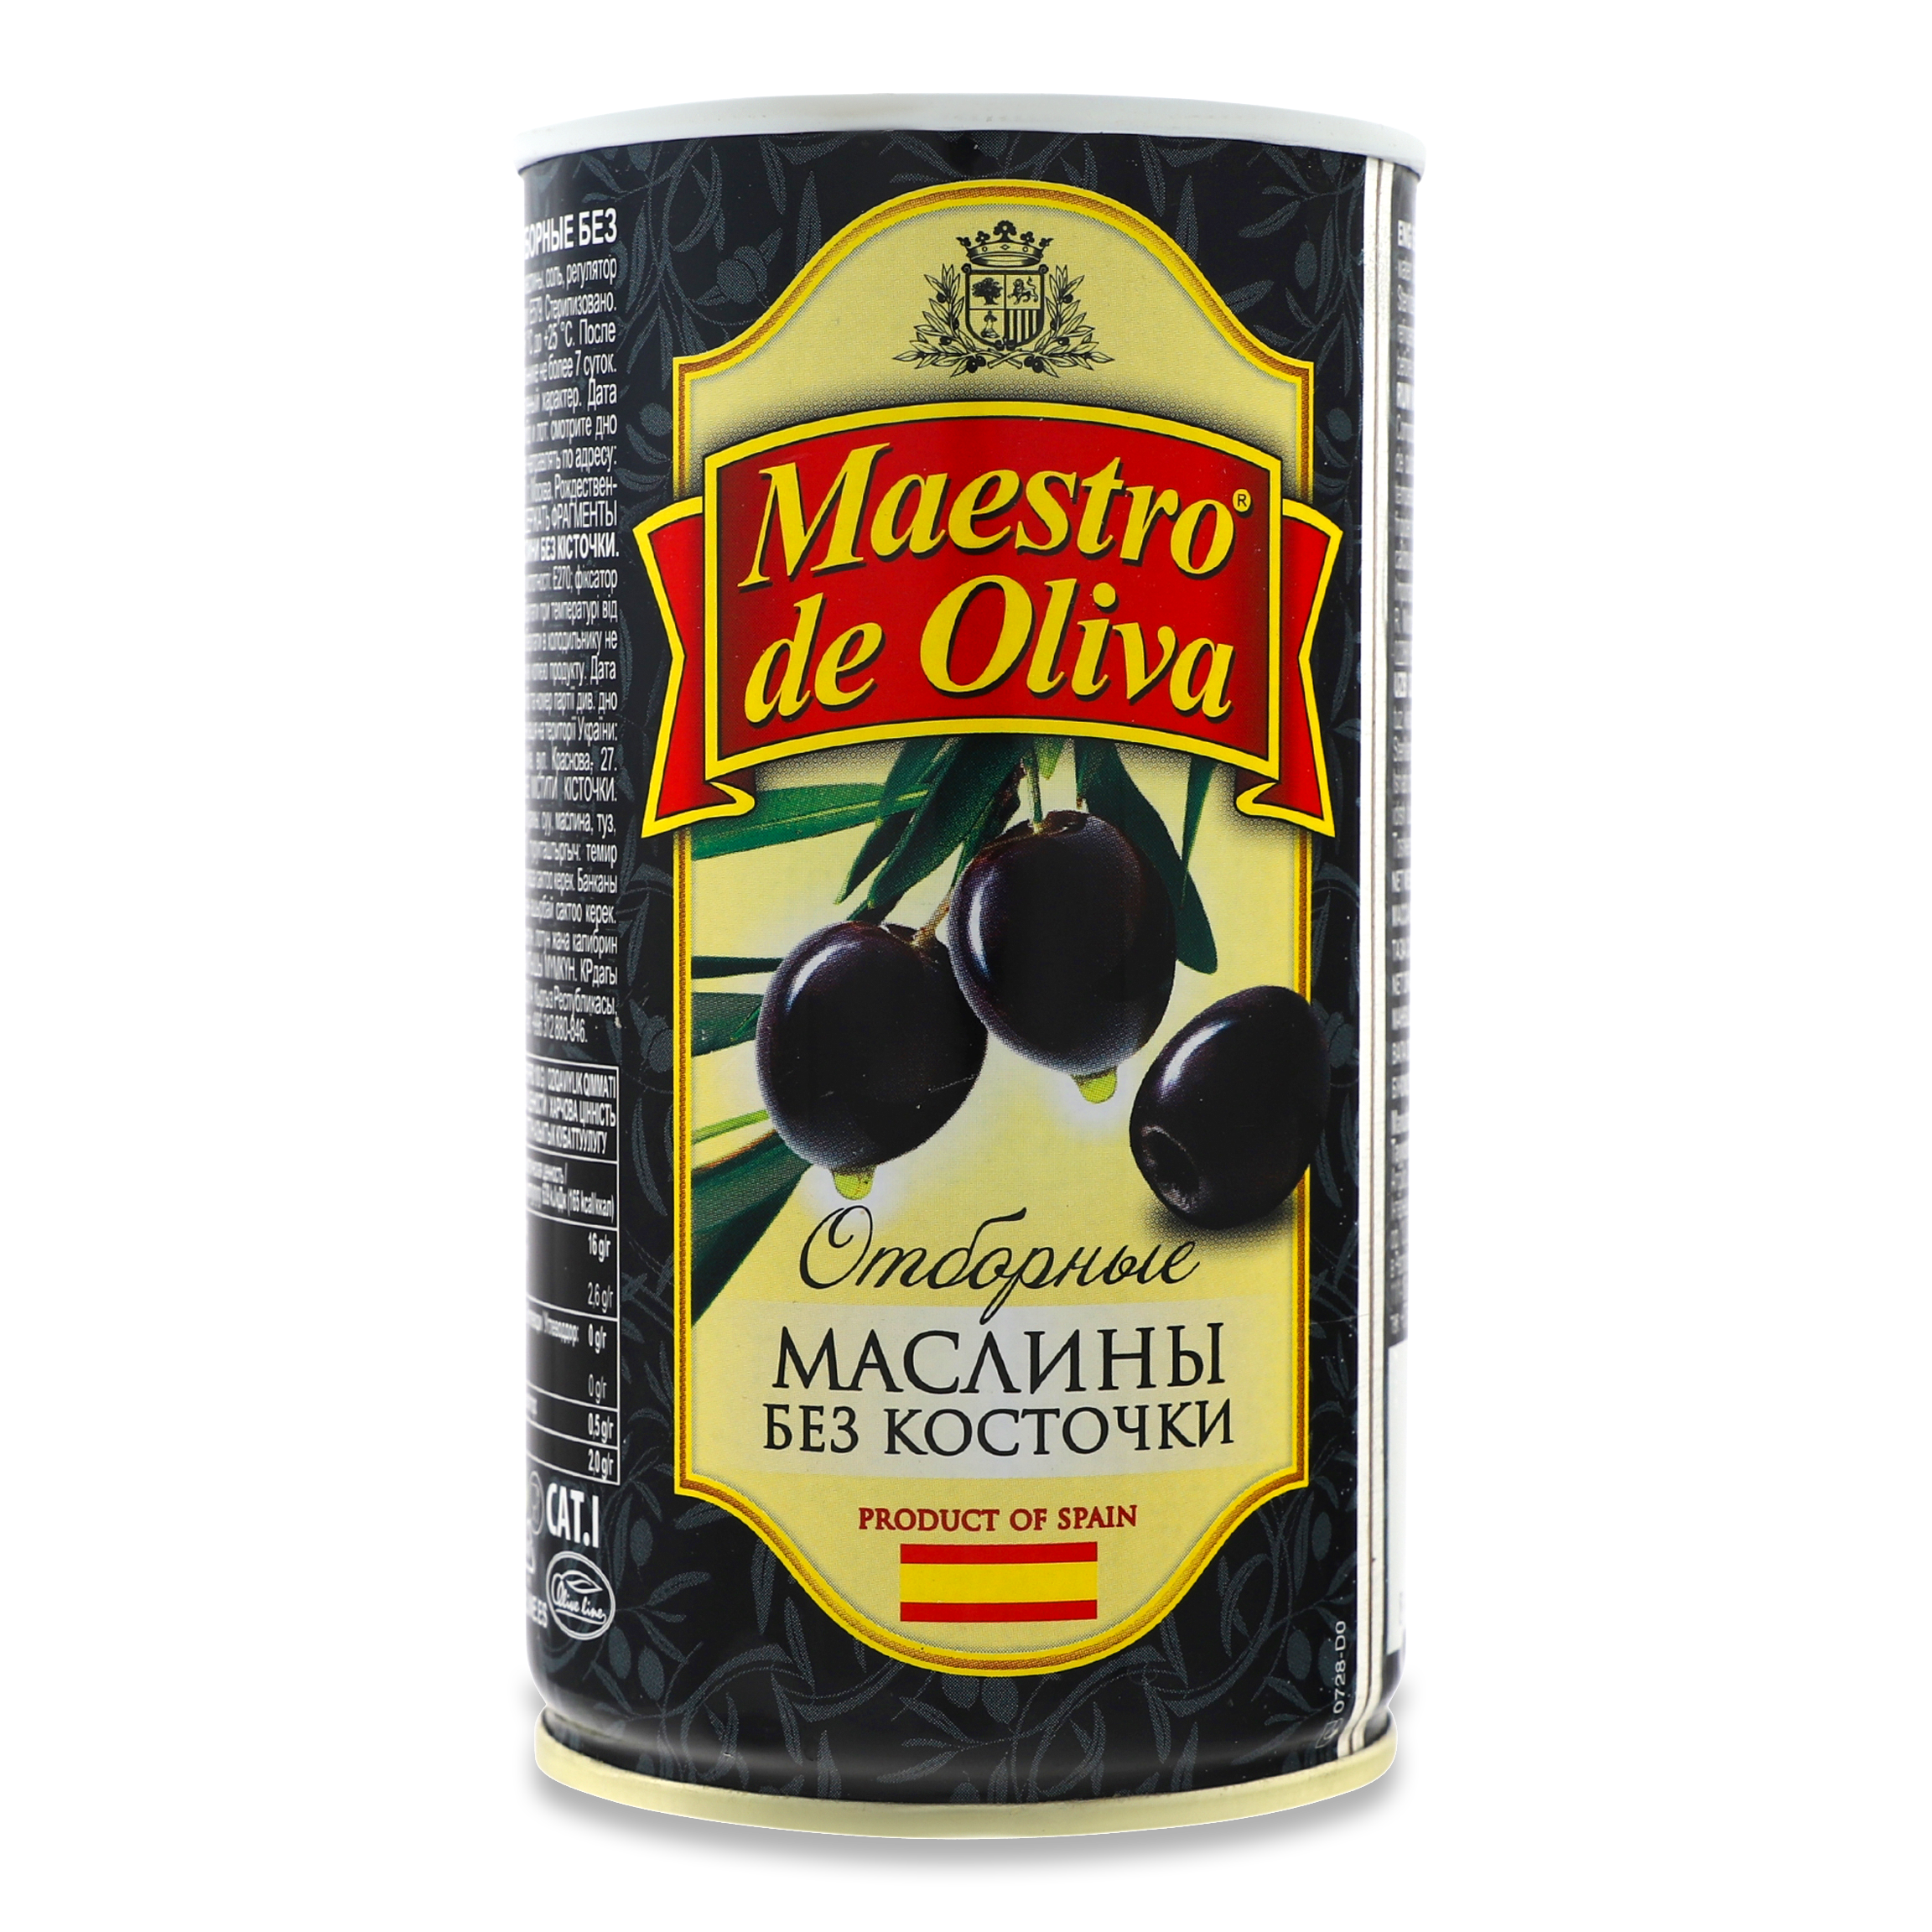 Маслини Maestro de Oliva чорні без кісточки 360г